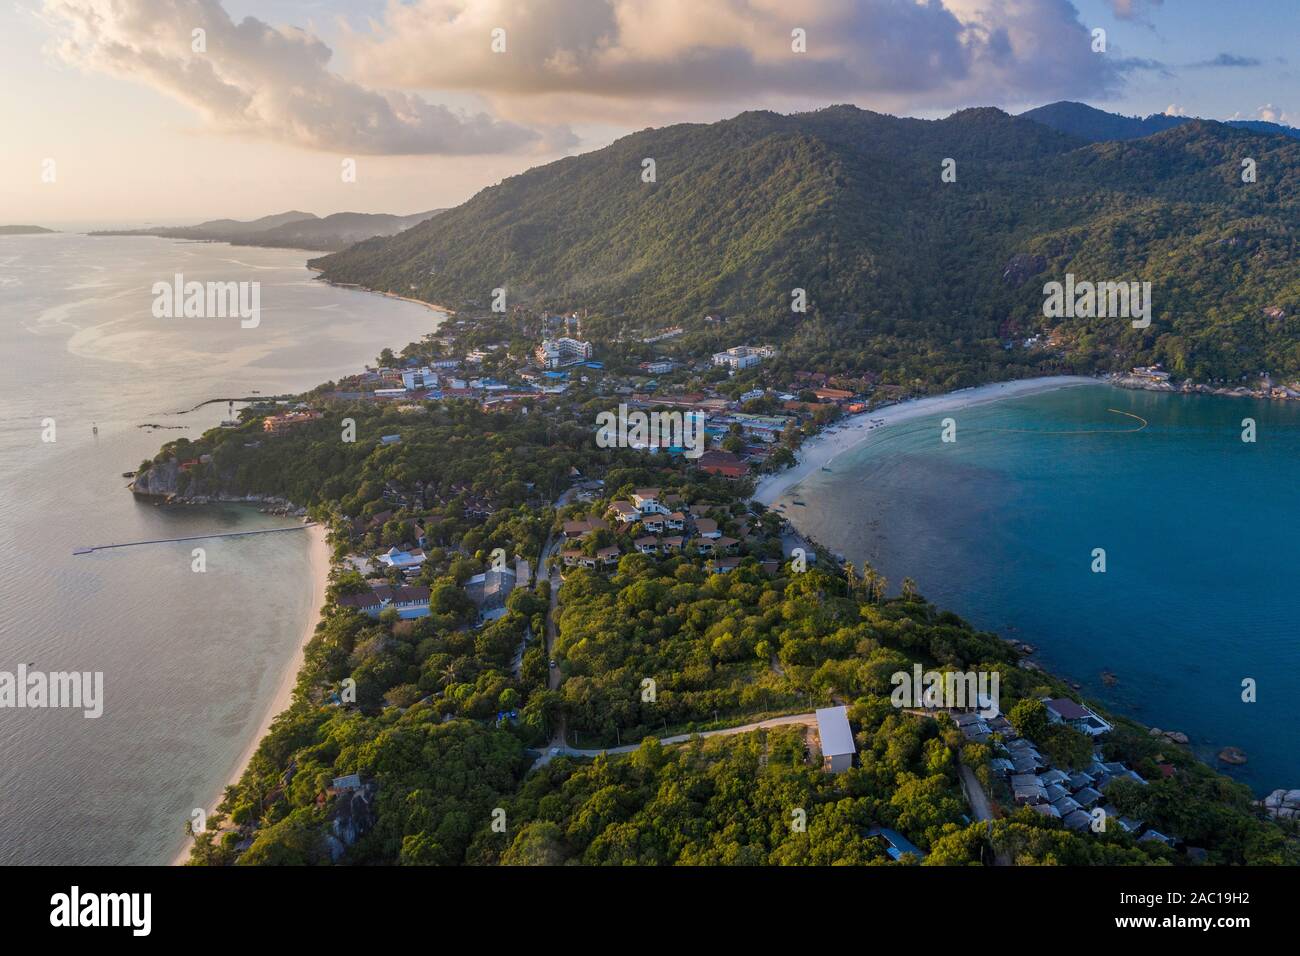 Image de drone aérien de l'île de Ko Tao ou de Koh Tao en Thaïlande Banque D'Images